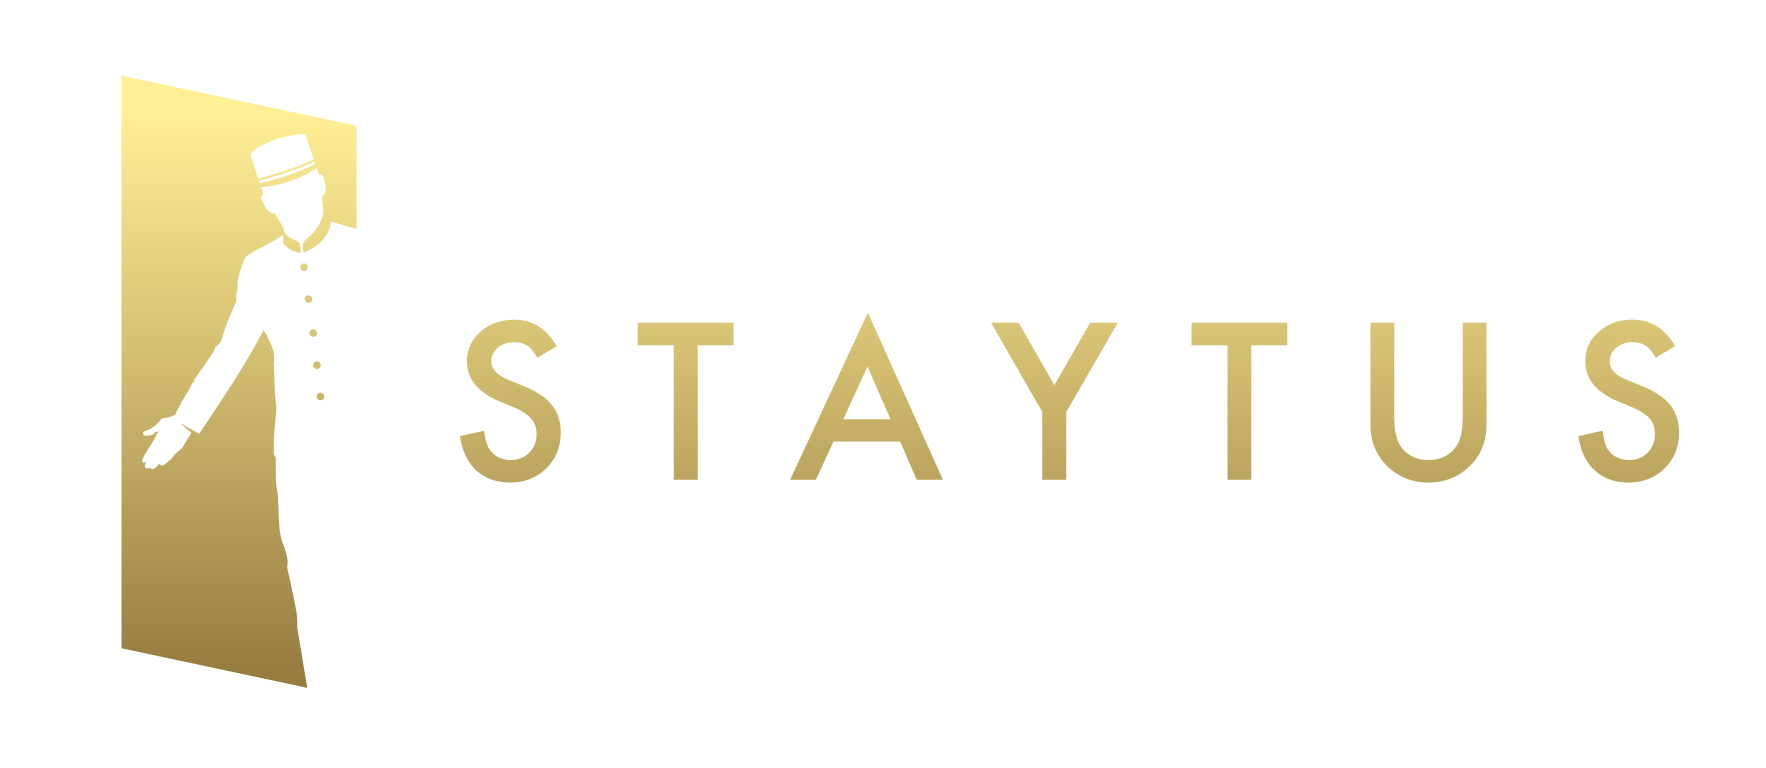 Staytus logo